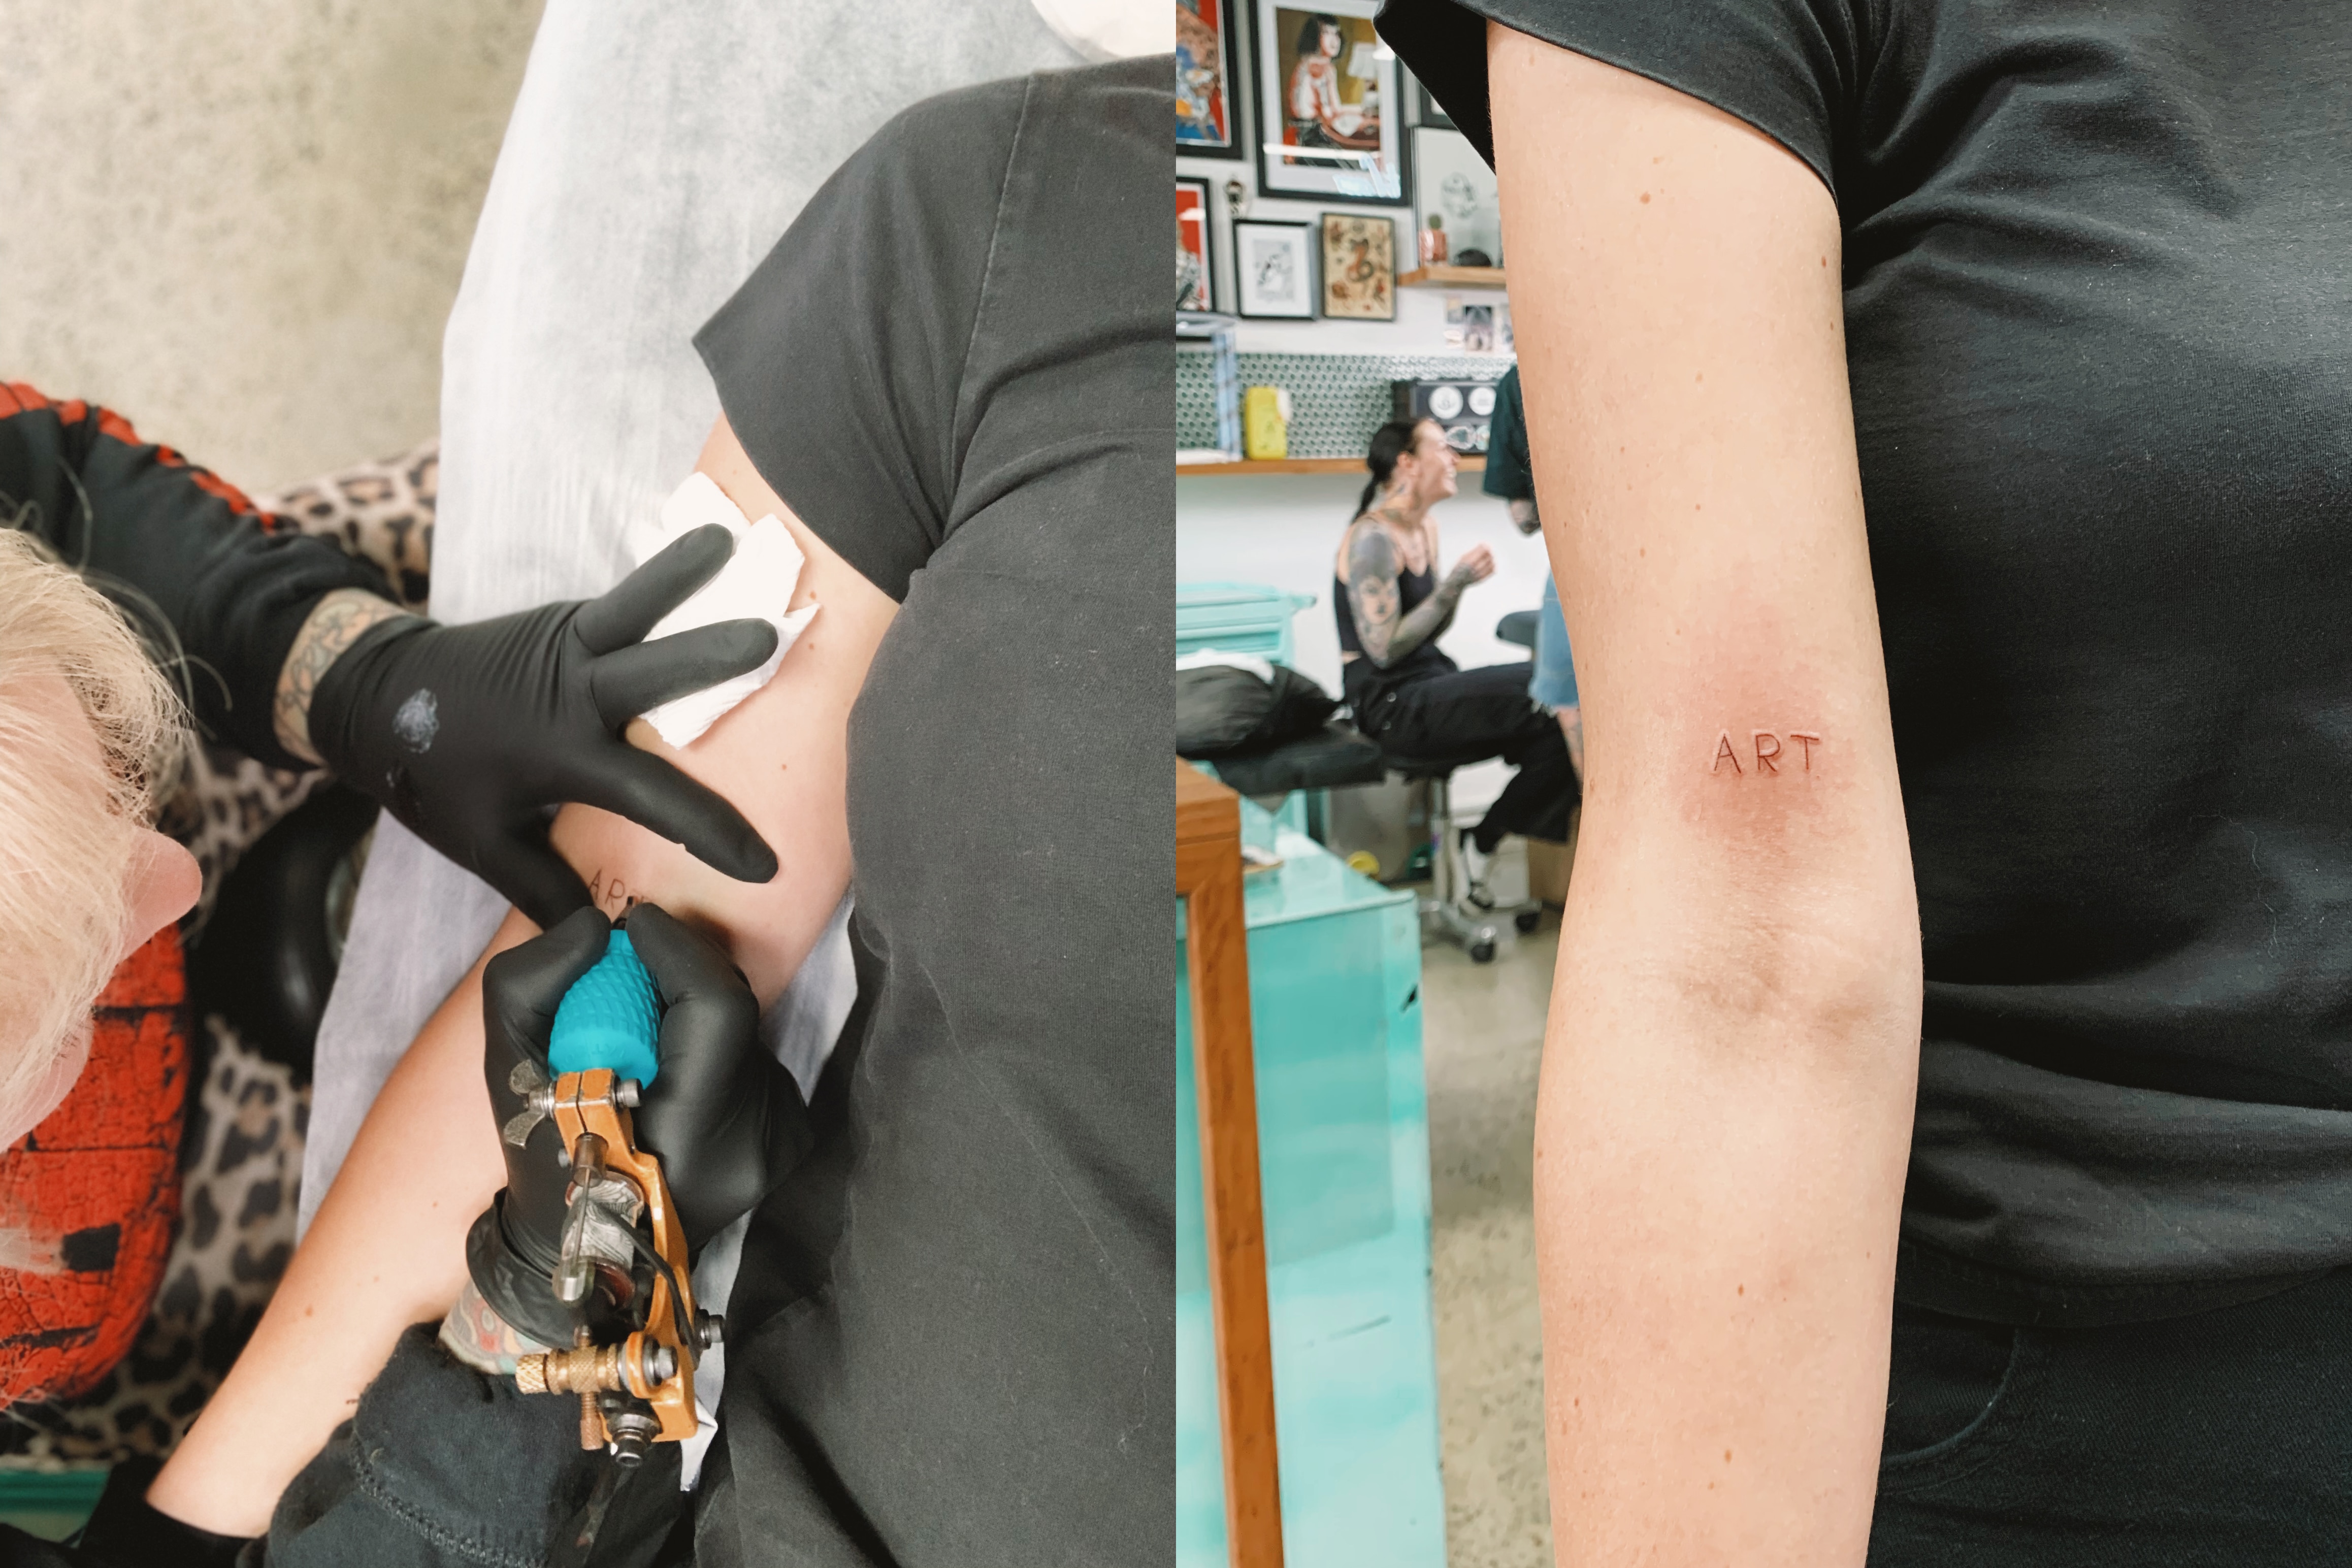 Lisa Skerrett gets tattoed